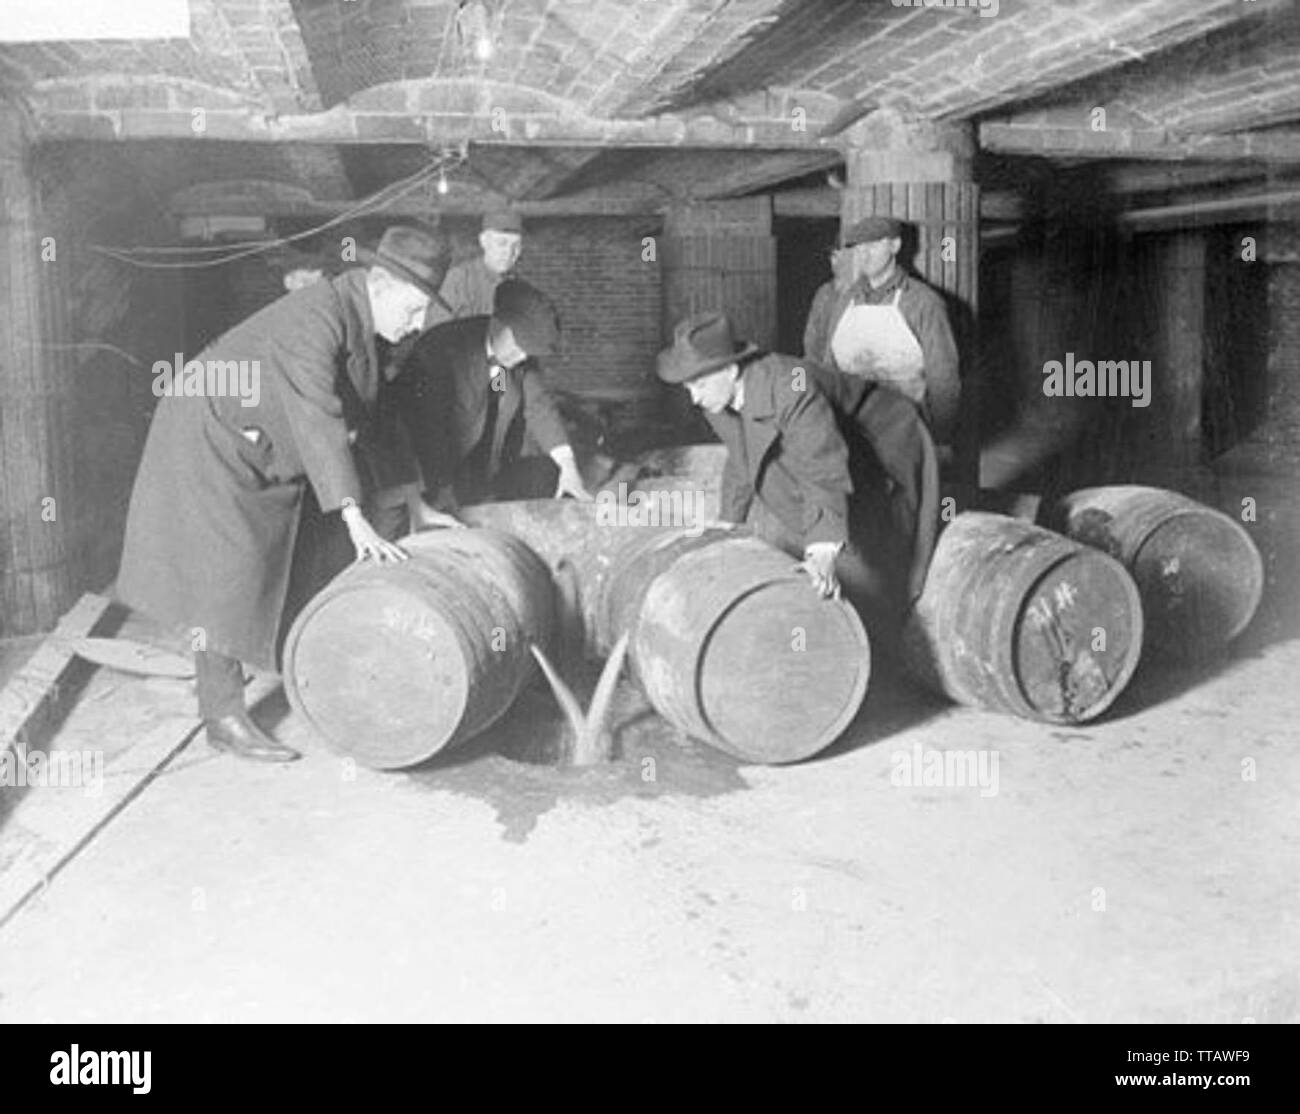 Prohibition agents destroying barrels of alcohol (United States, prohibition era) Stock Photo